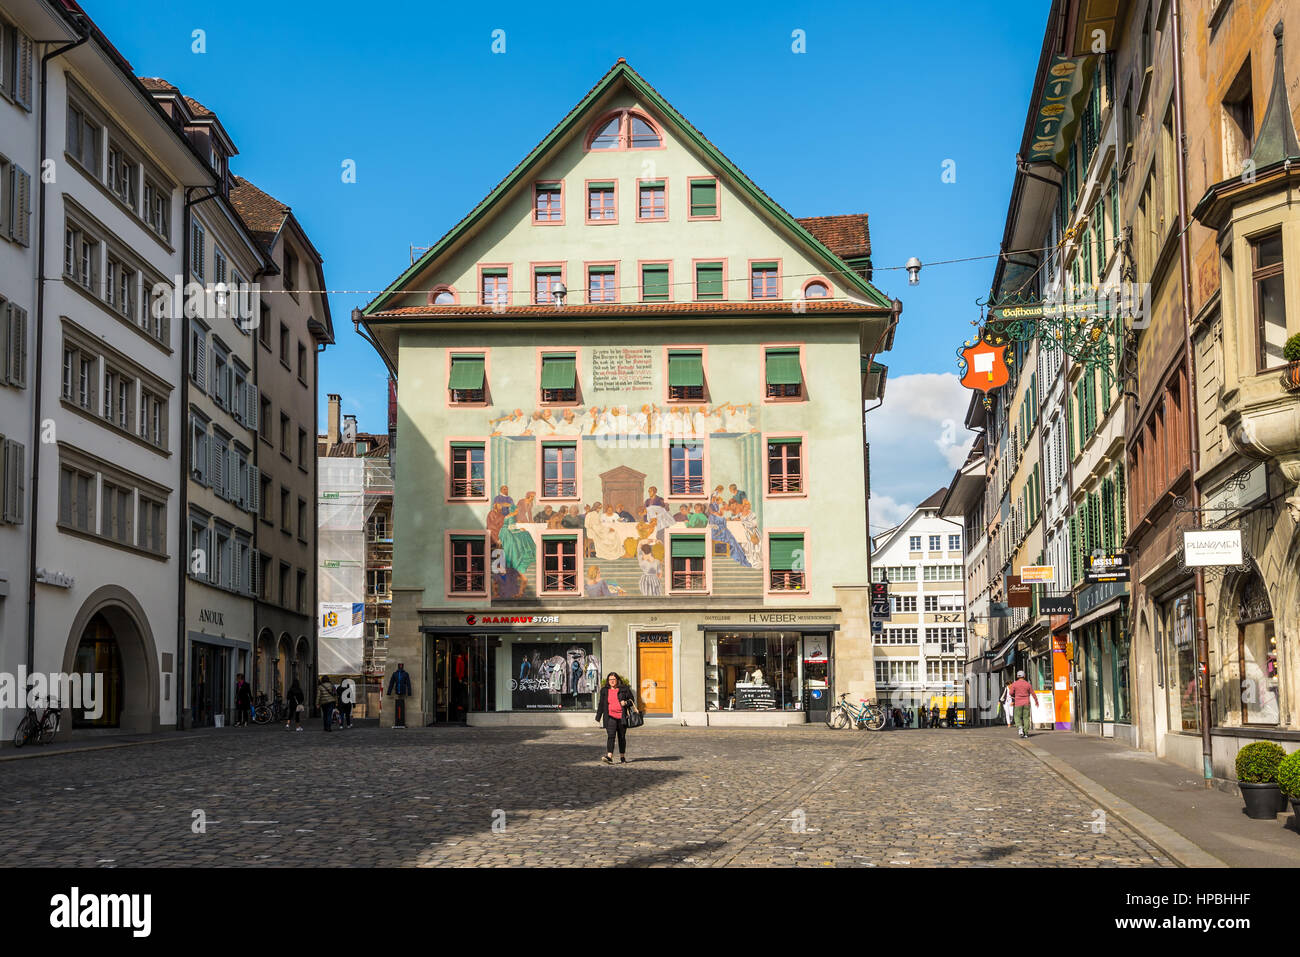 Lucerne, Suisse - 24 mai 2016 : Architecture de Lucerne. La ville pittoresque de Lucerne Weinmarkt, Suisse. Il y a une zone de marché chaque premier samedi Banque D'Images